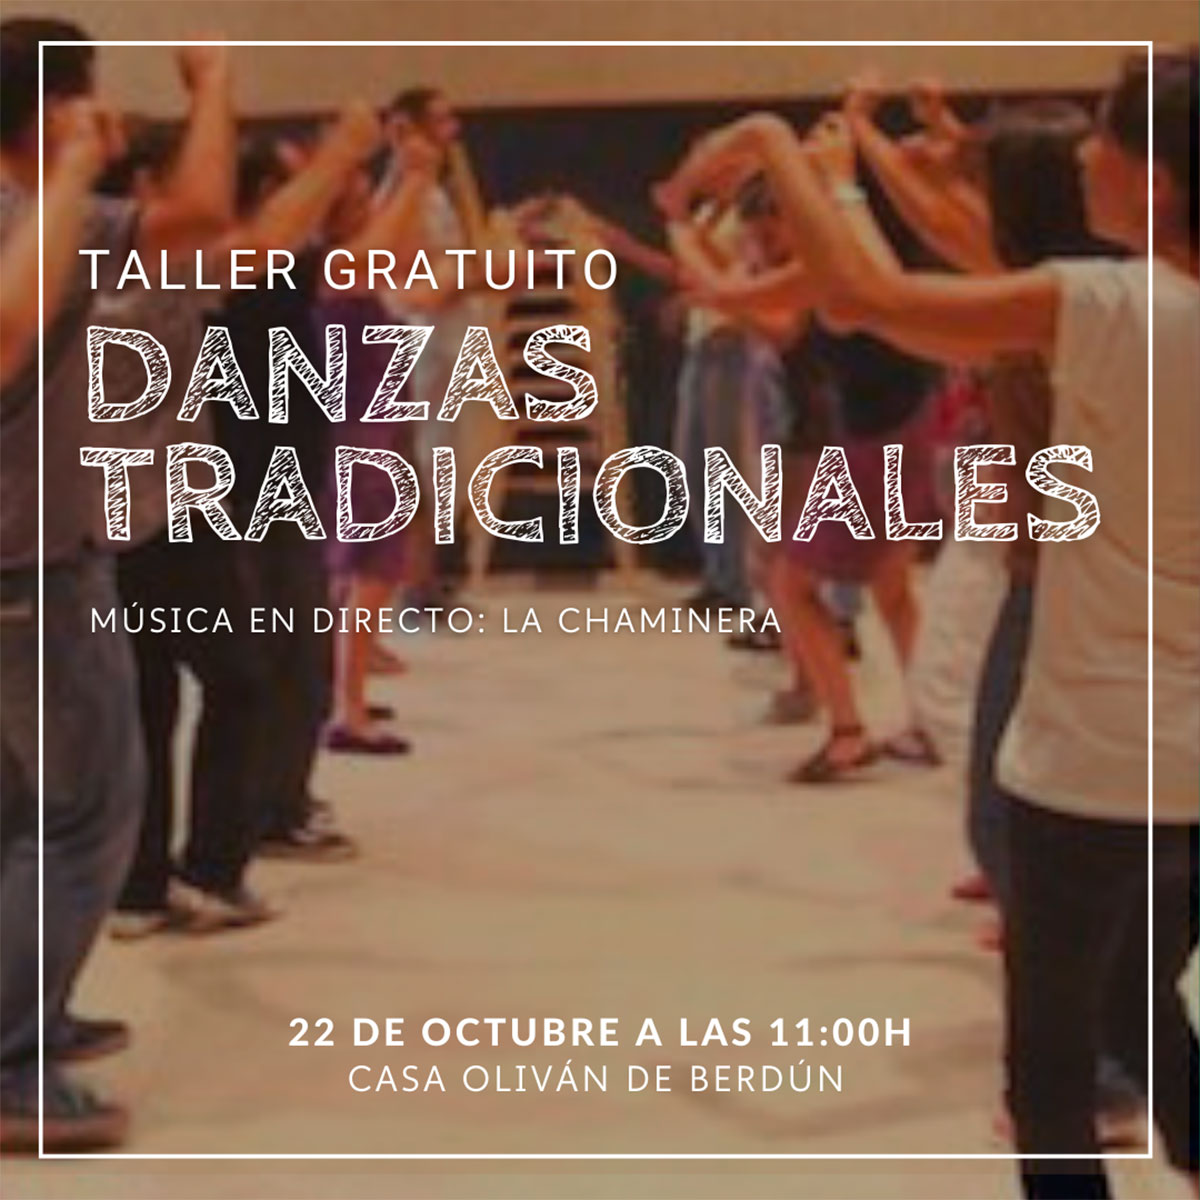 Taller de danzas tradicionales con música en directo de La Chaminera. Casa Oliván. 11:00 h.